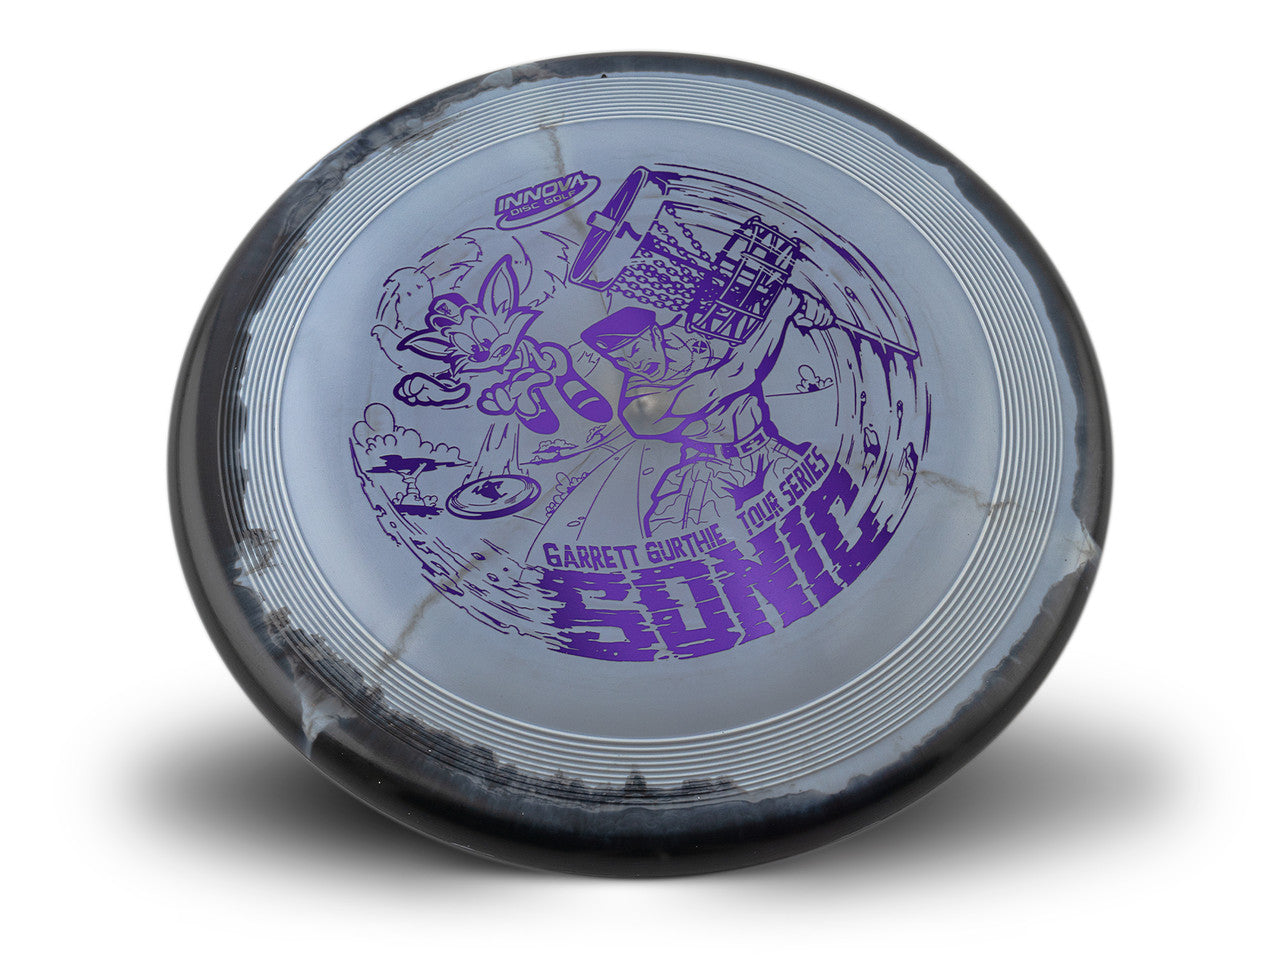 Innova Halo Star Sonic Putter with Garrett Gurthie Tour Series 2022 Stamp - Speed 1